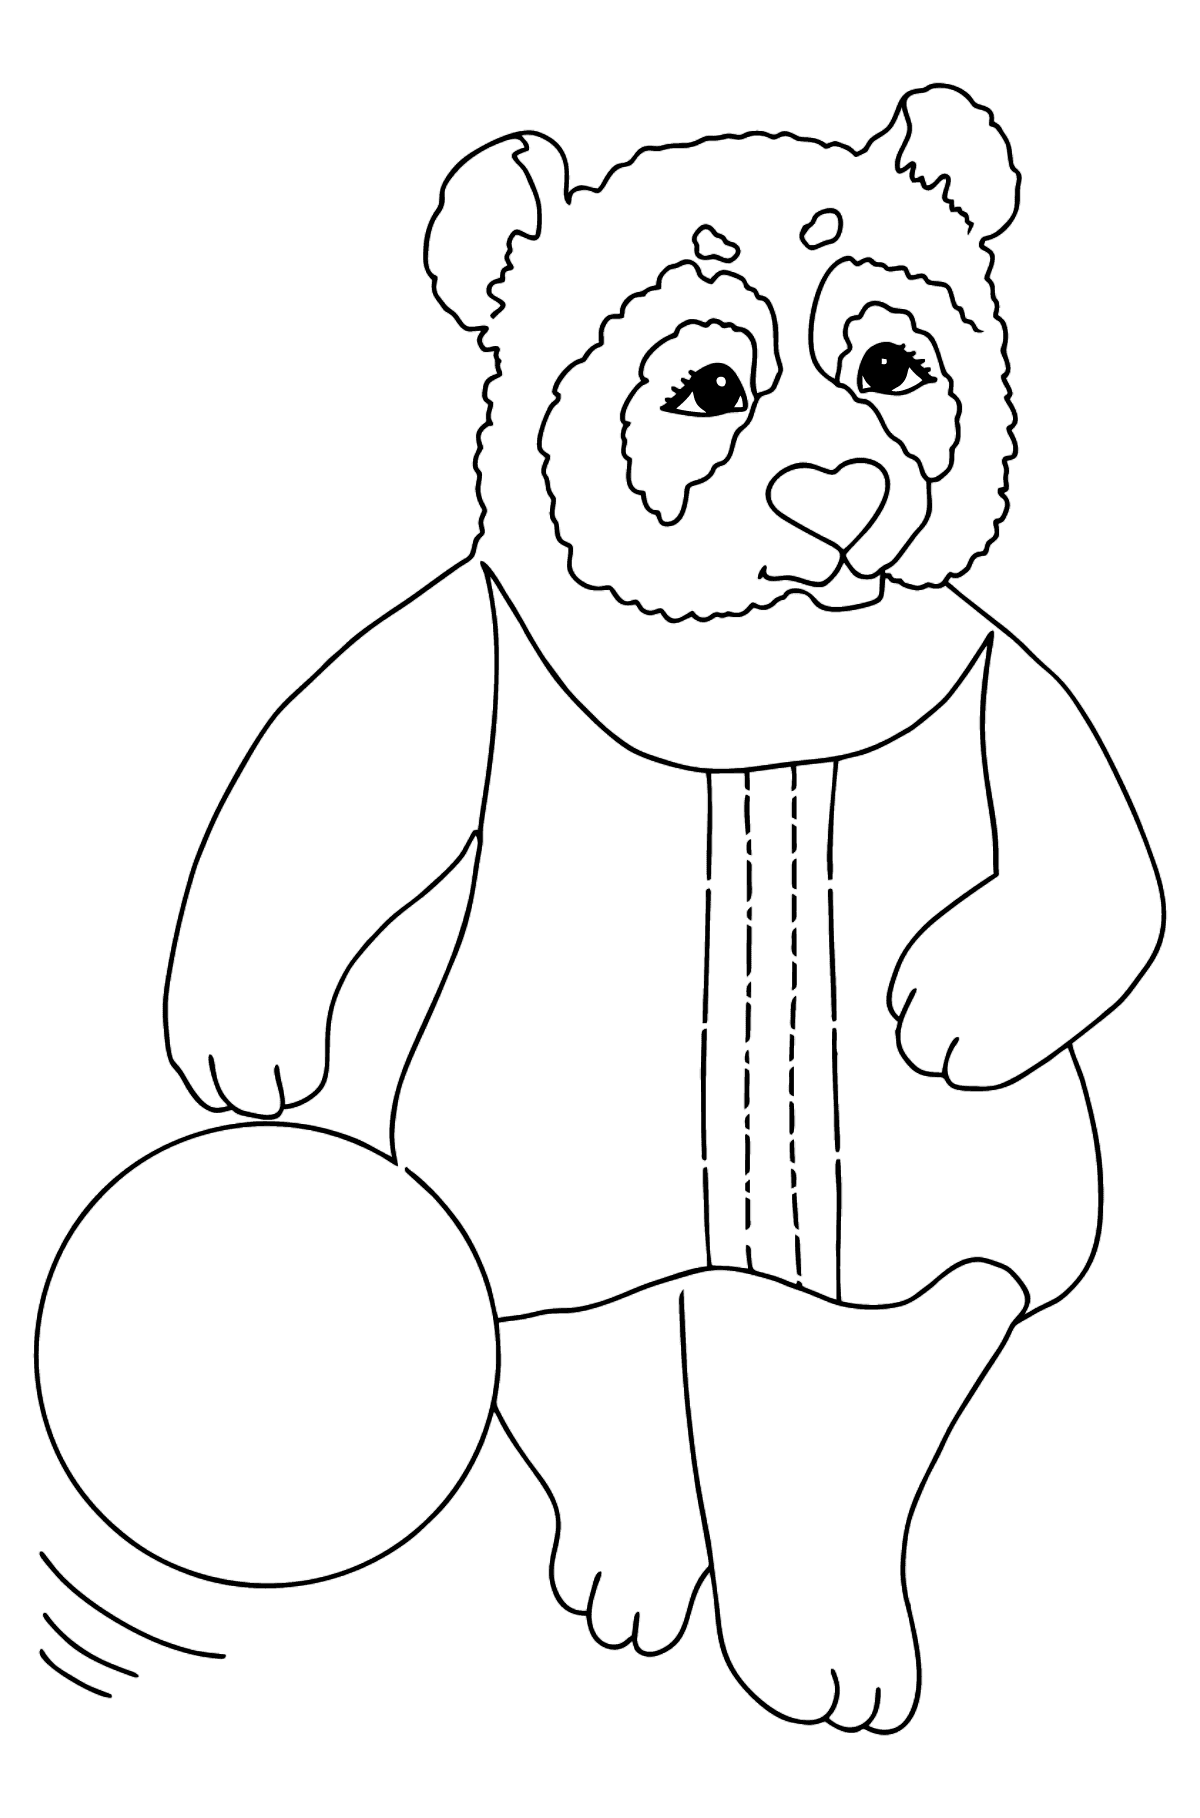 Kolorowanka Panda dla maluchów (Prosty) - Kolorowanki dla dzieci